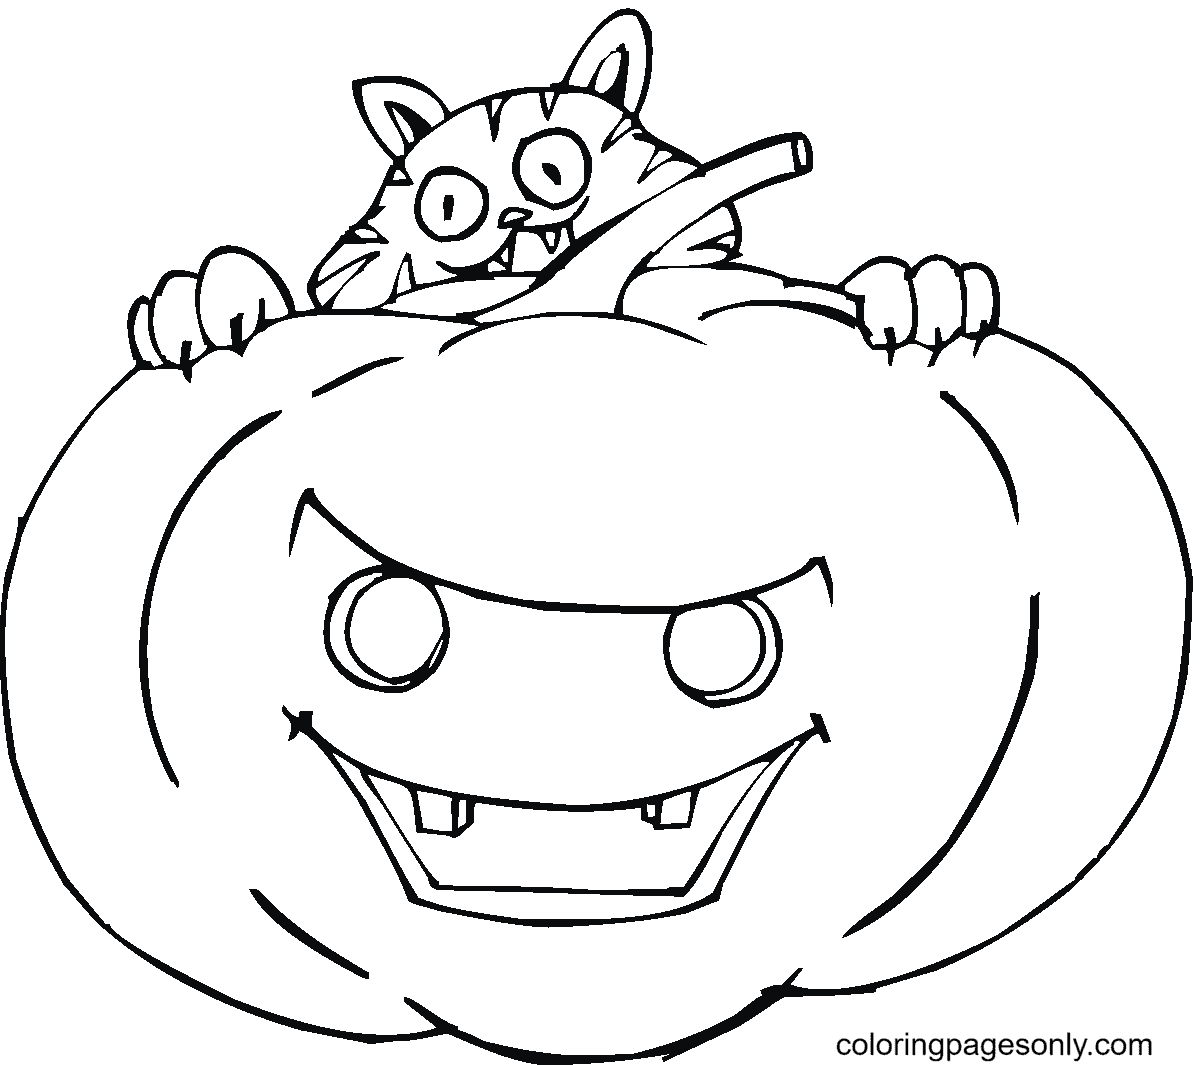 Calabaza de Halloween con Gato Loco de Halloween Cats